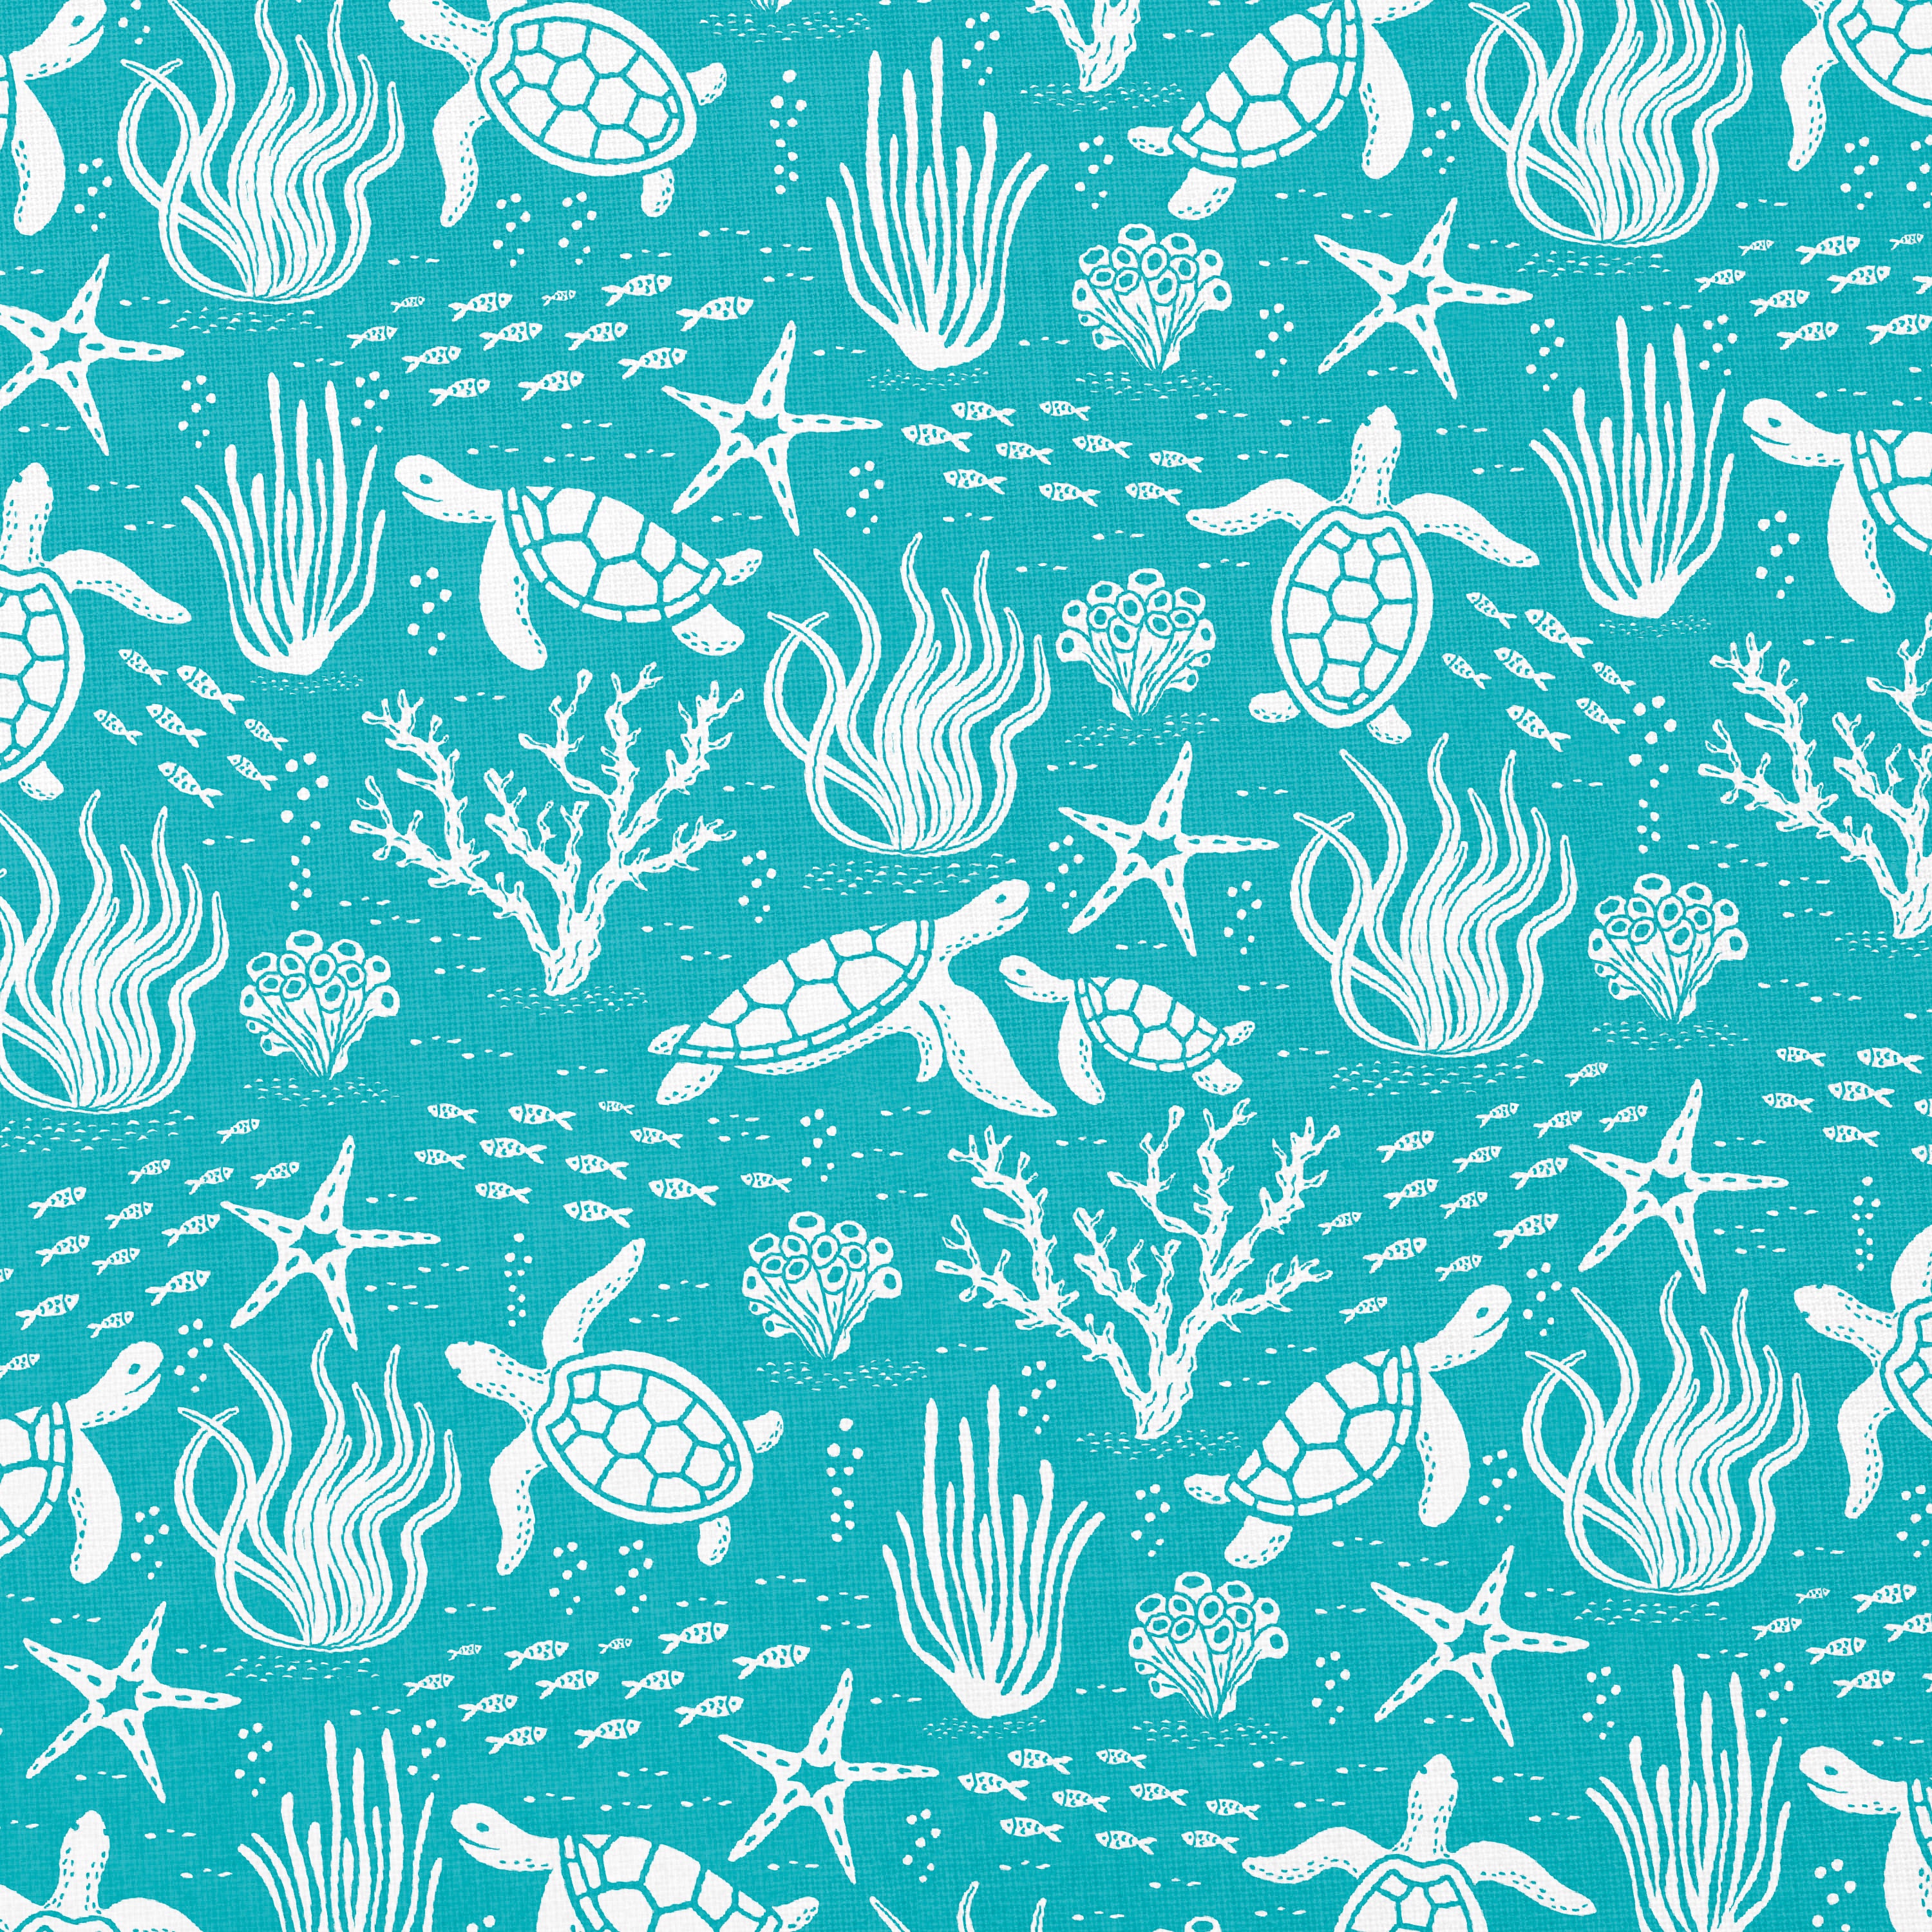 Underwater Sea Turtles Pattern by Elivera Designs